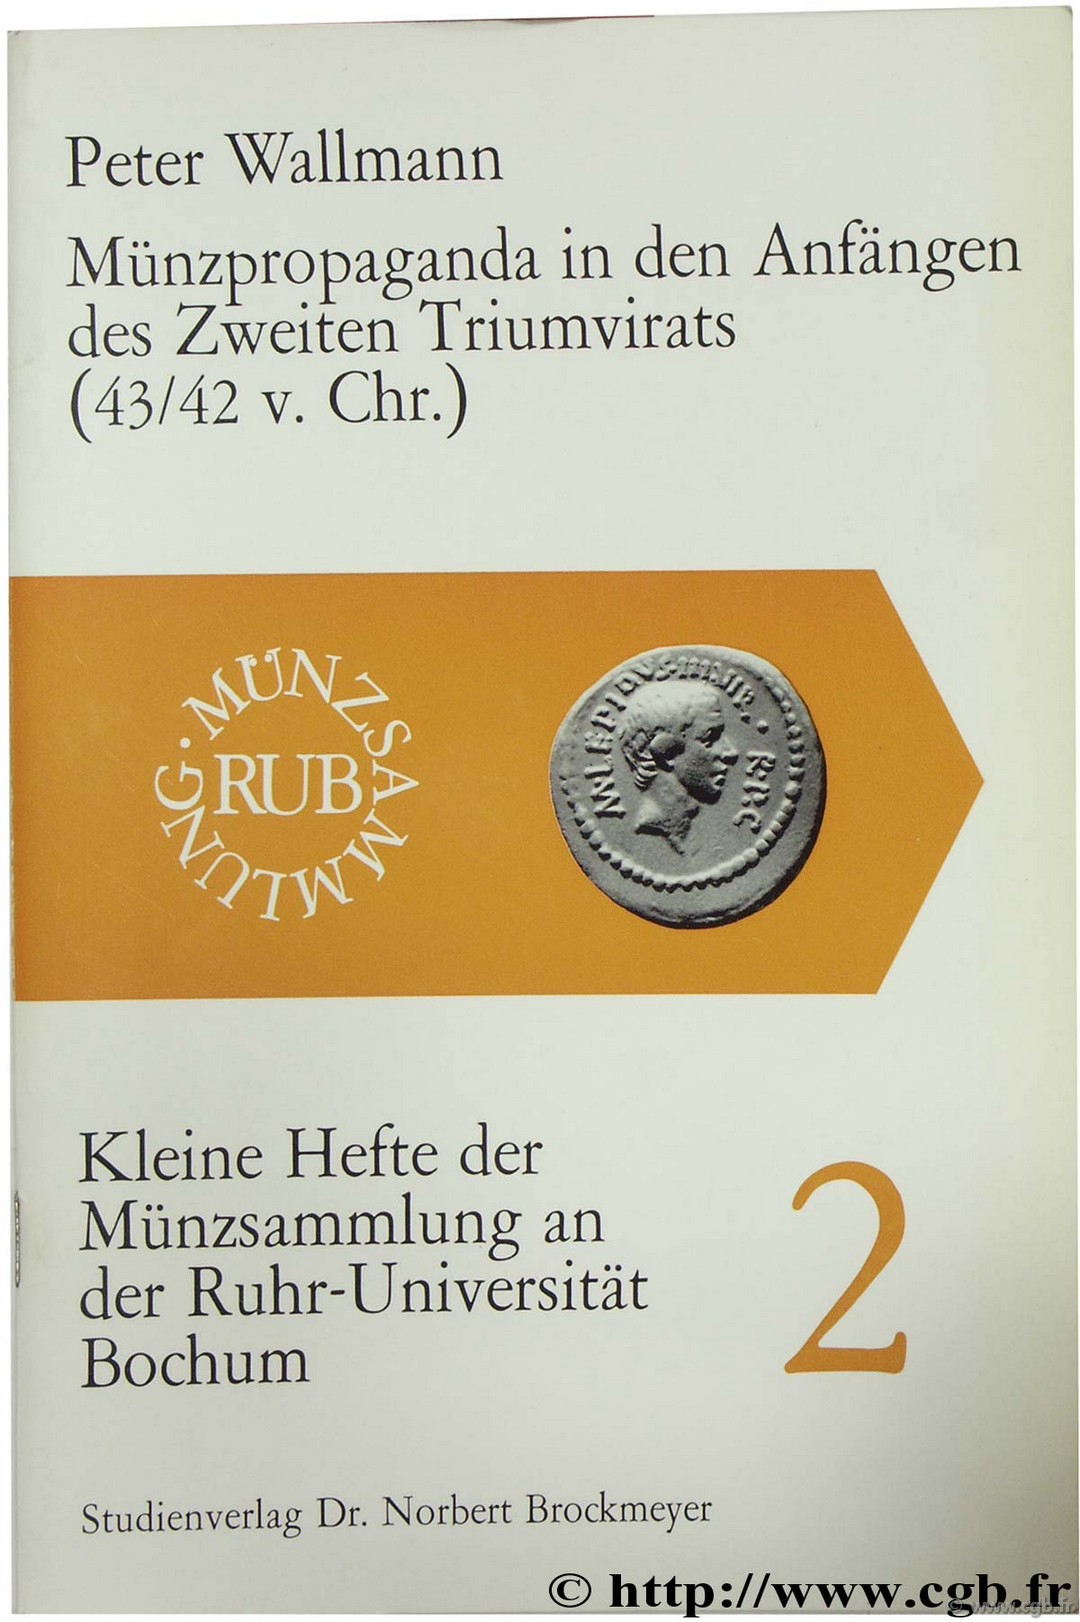 Münzpropaganda in den Anfängen des Zweiten Triumvirats (43/42 v. Chr.) - Kleine Hefte der Münzsammlung an der Ruhr-Universität Bochum 2 WALLMANN P.